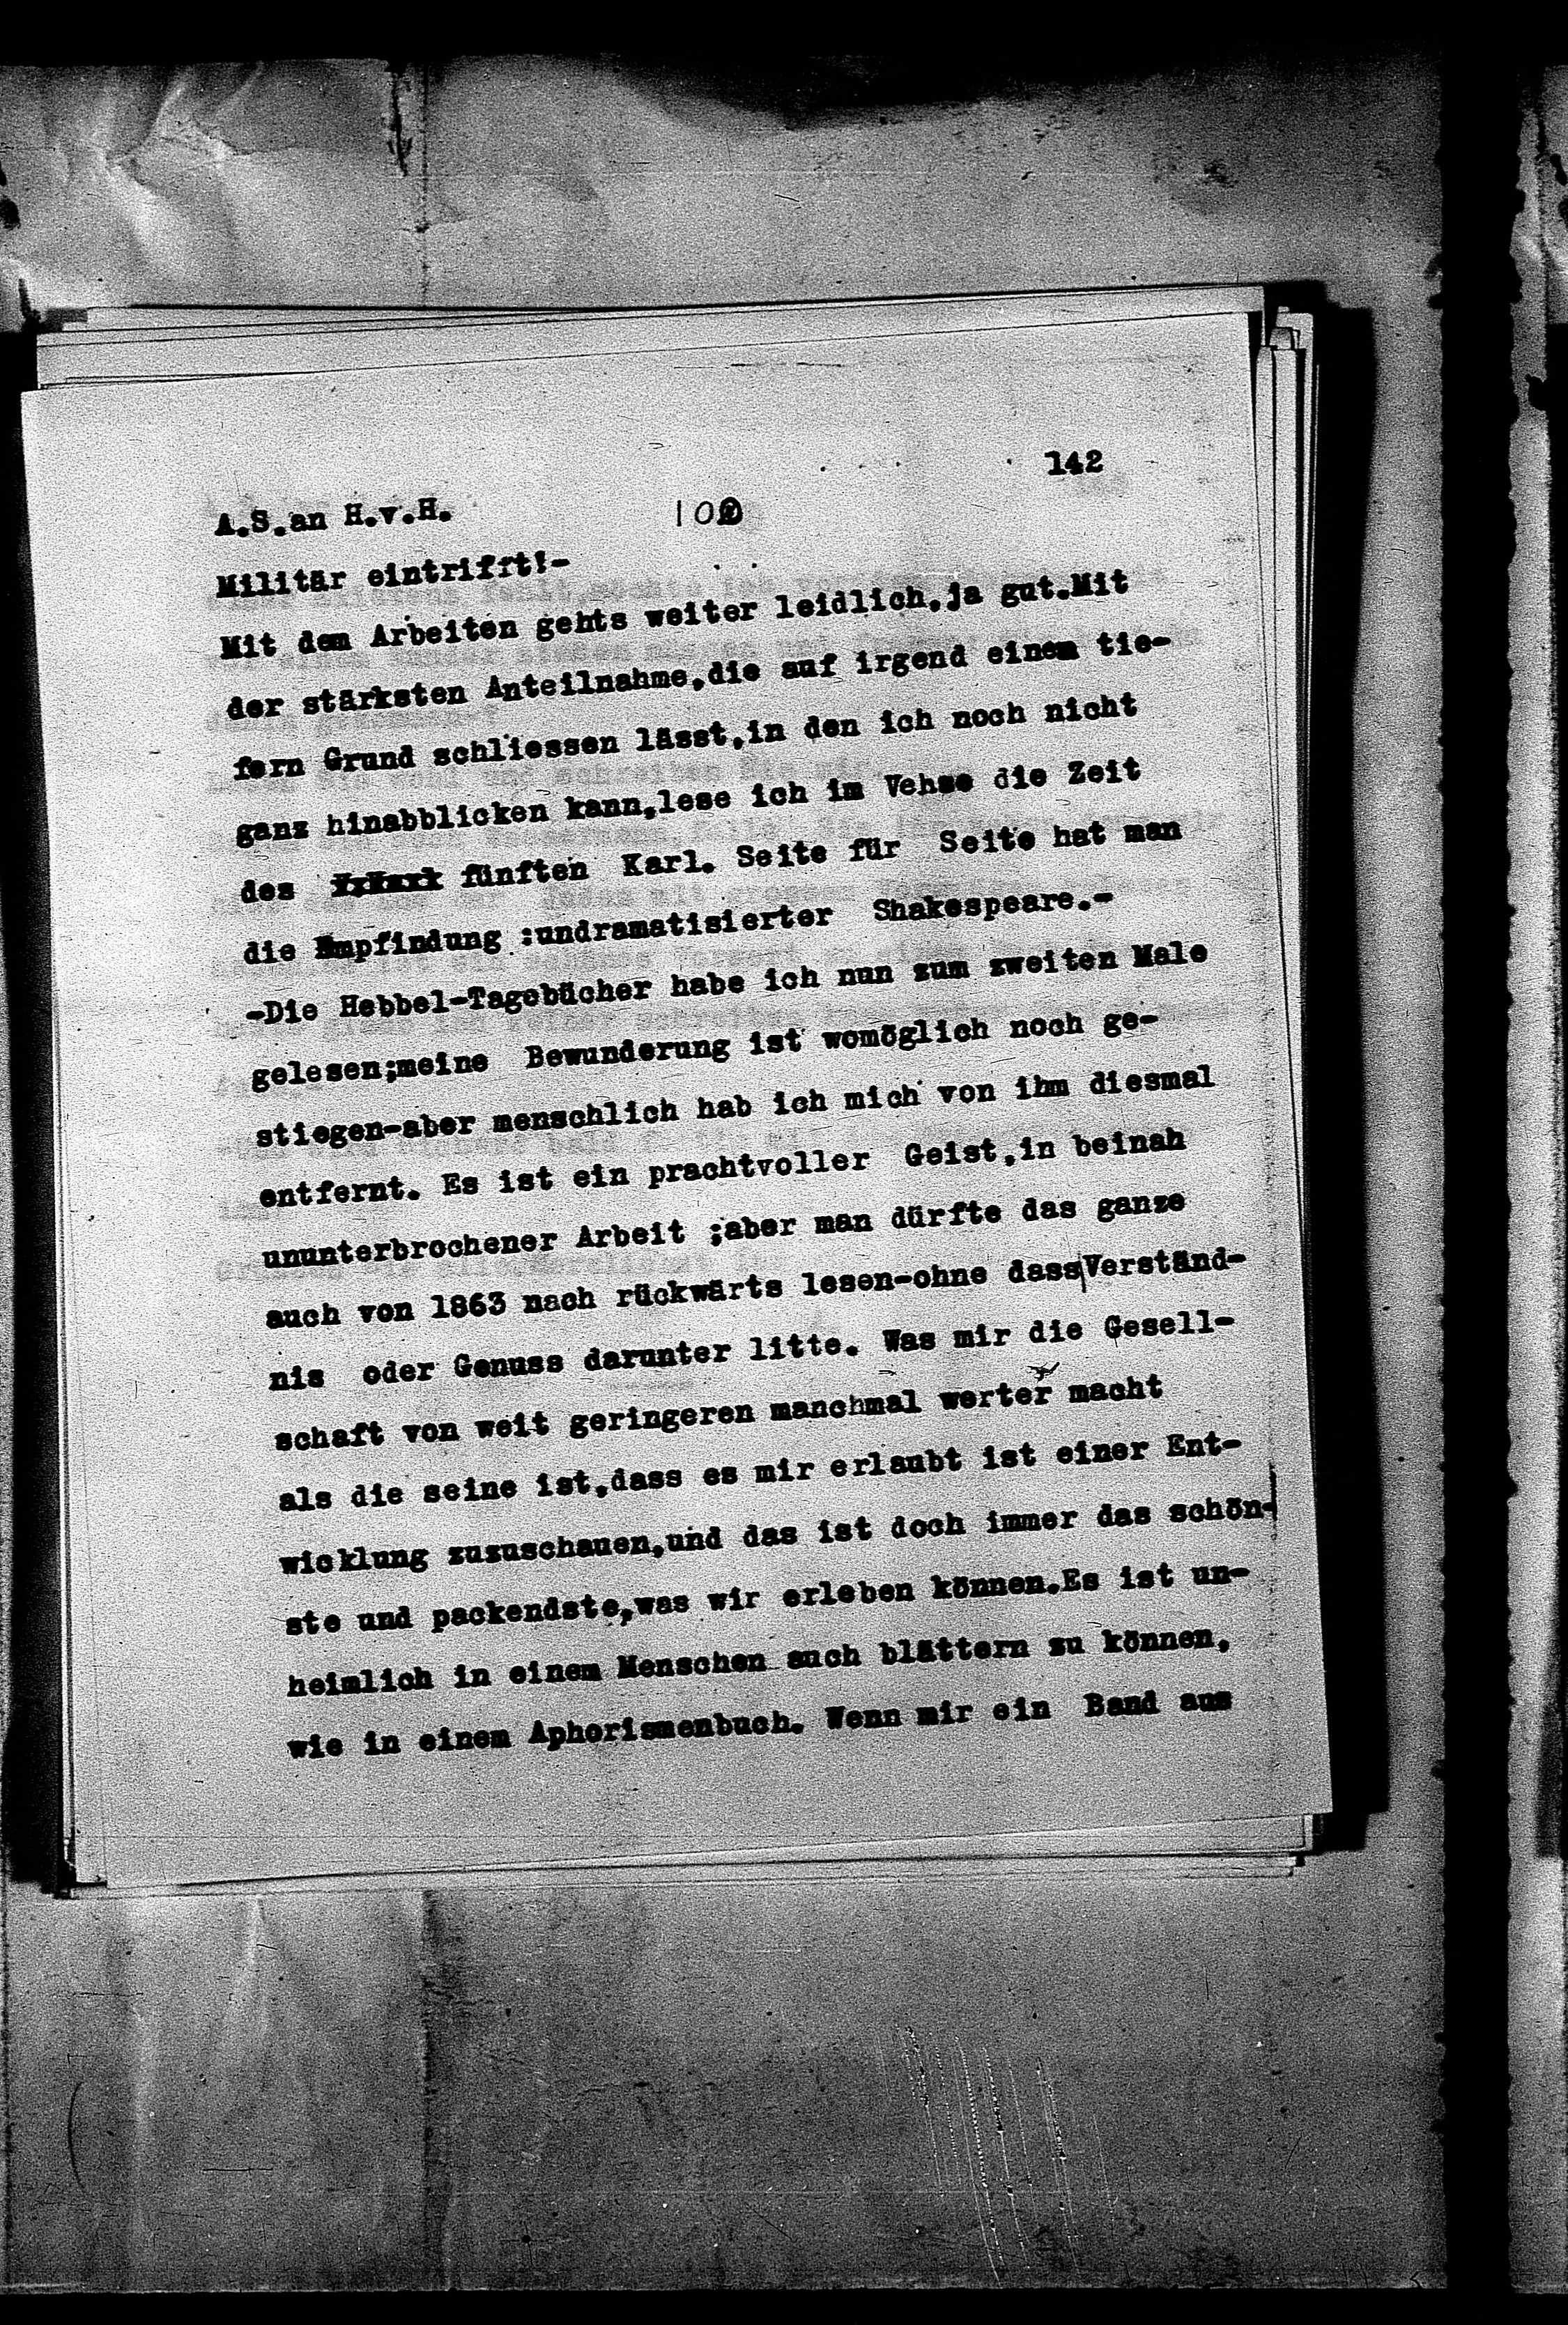 Vorschaubild für Hofmannsthal, Hugo von_AS an HvH Abschrift, HvH an AS, Originale (Mikrofilm 38), Seite 148